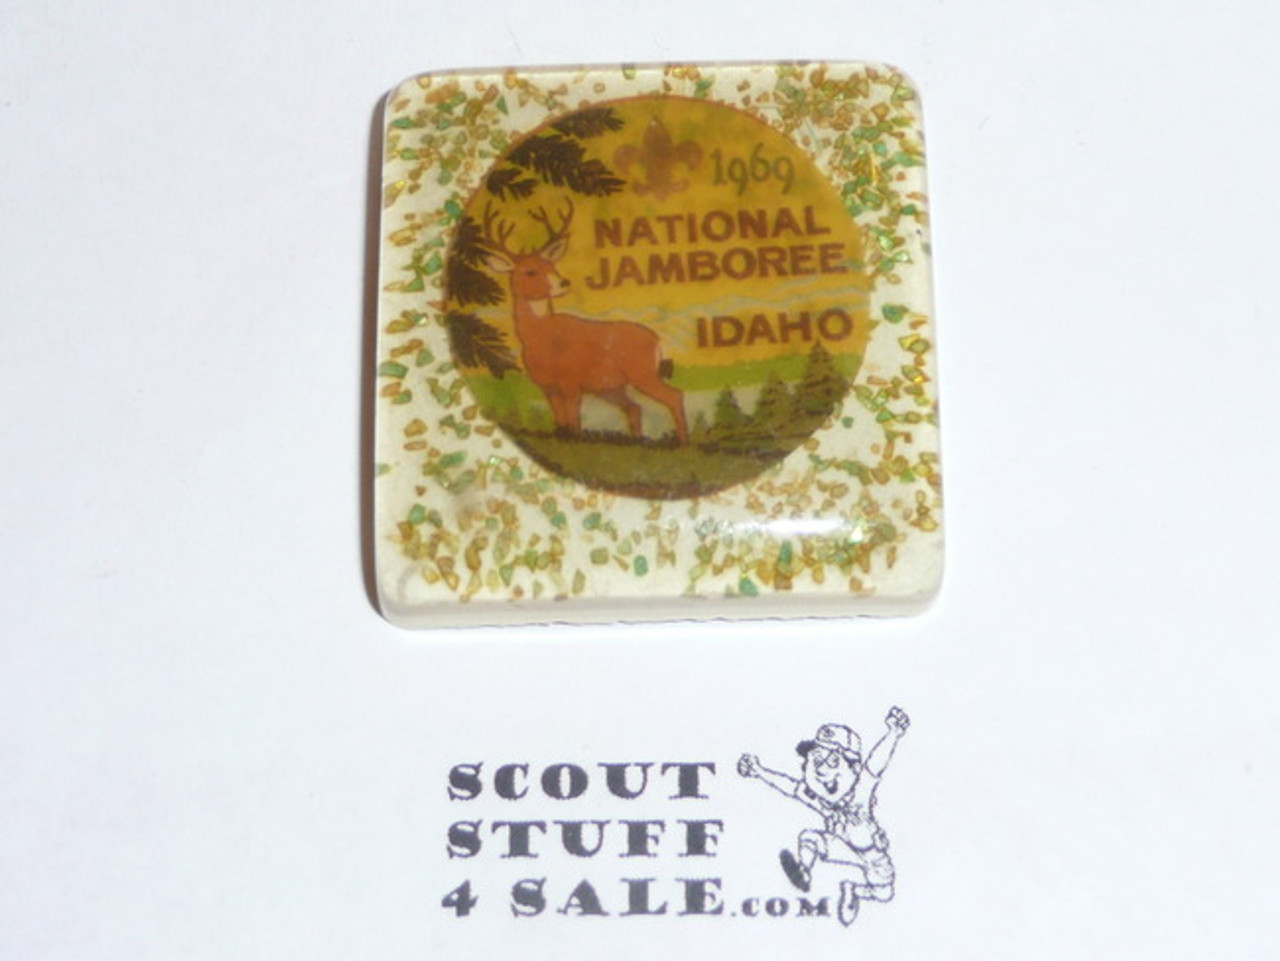 1969 National Jamboree plaster tile with emblem